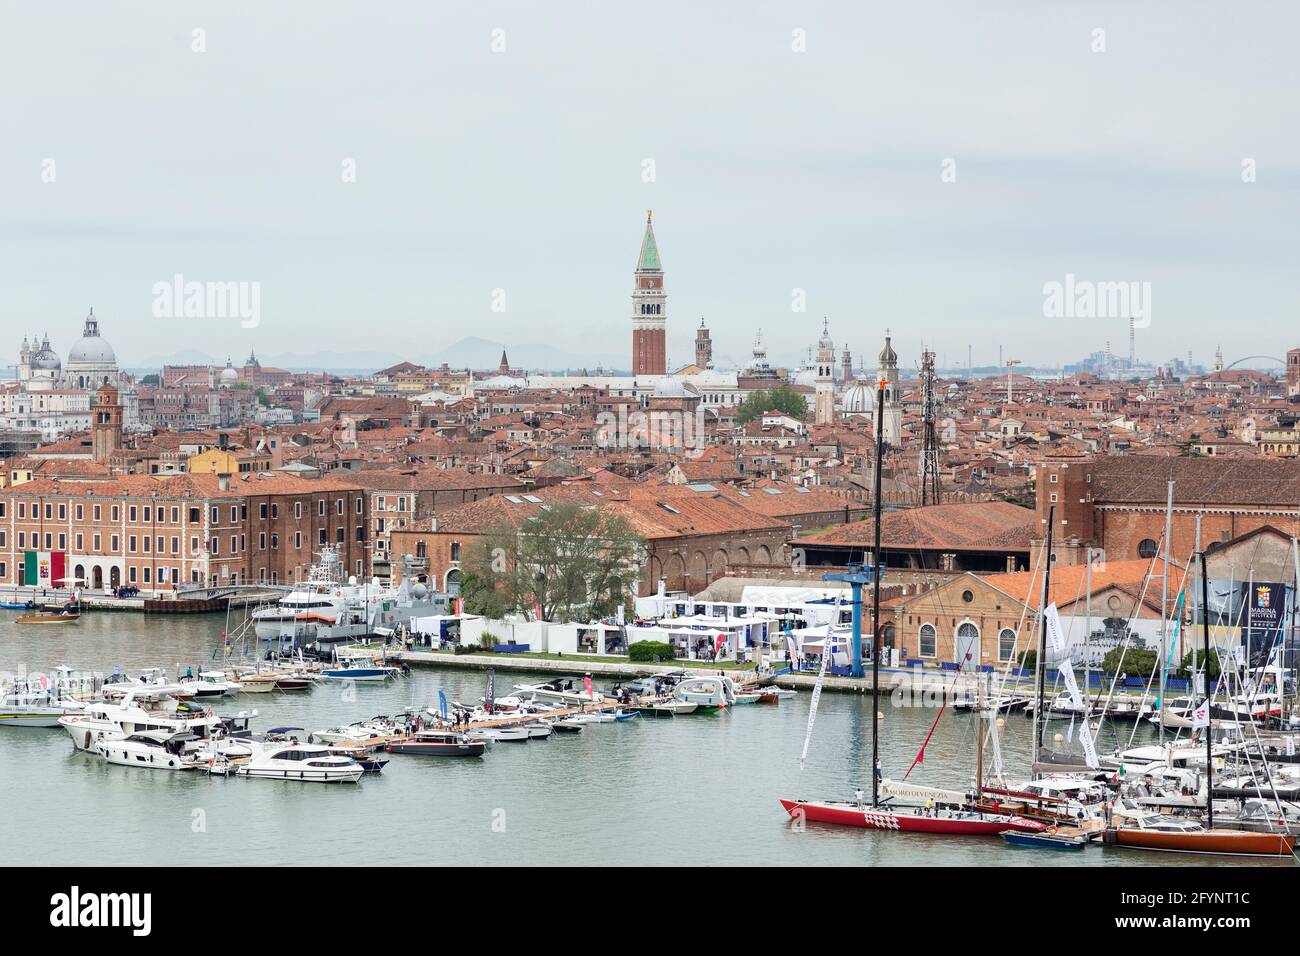 L'édition 2021 du salon nautique de Venise à Arsenale de Venise Italie mai 2021 Banque D'Images